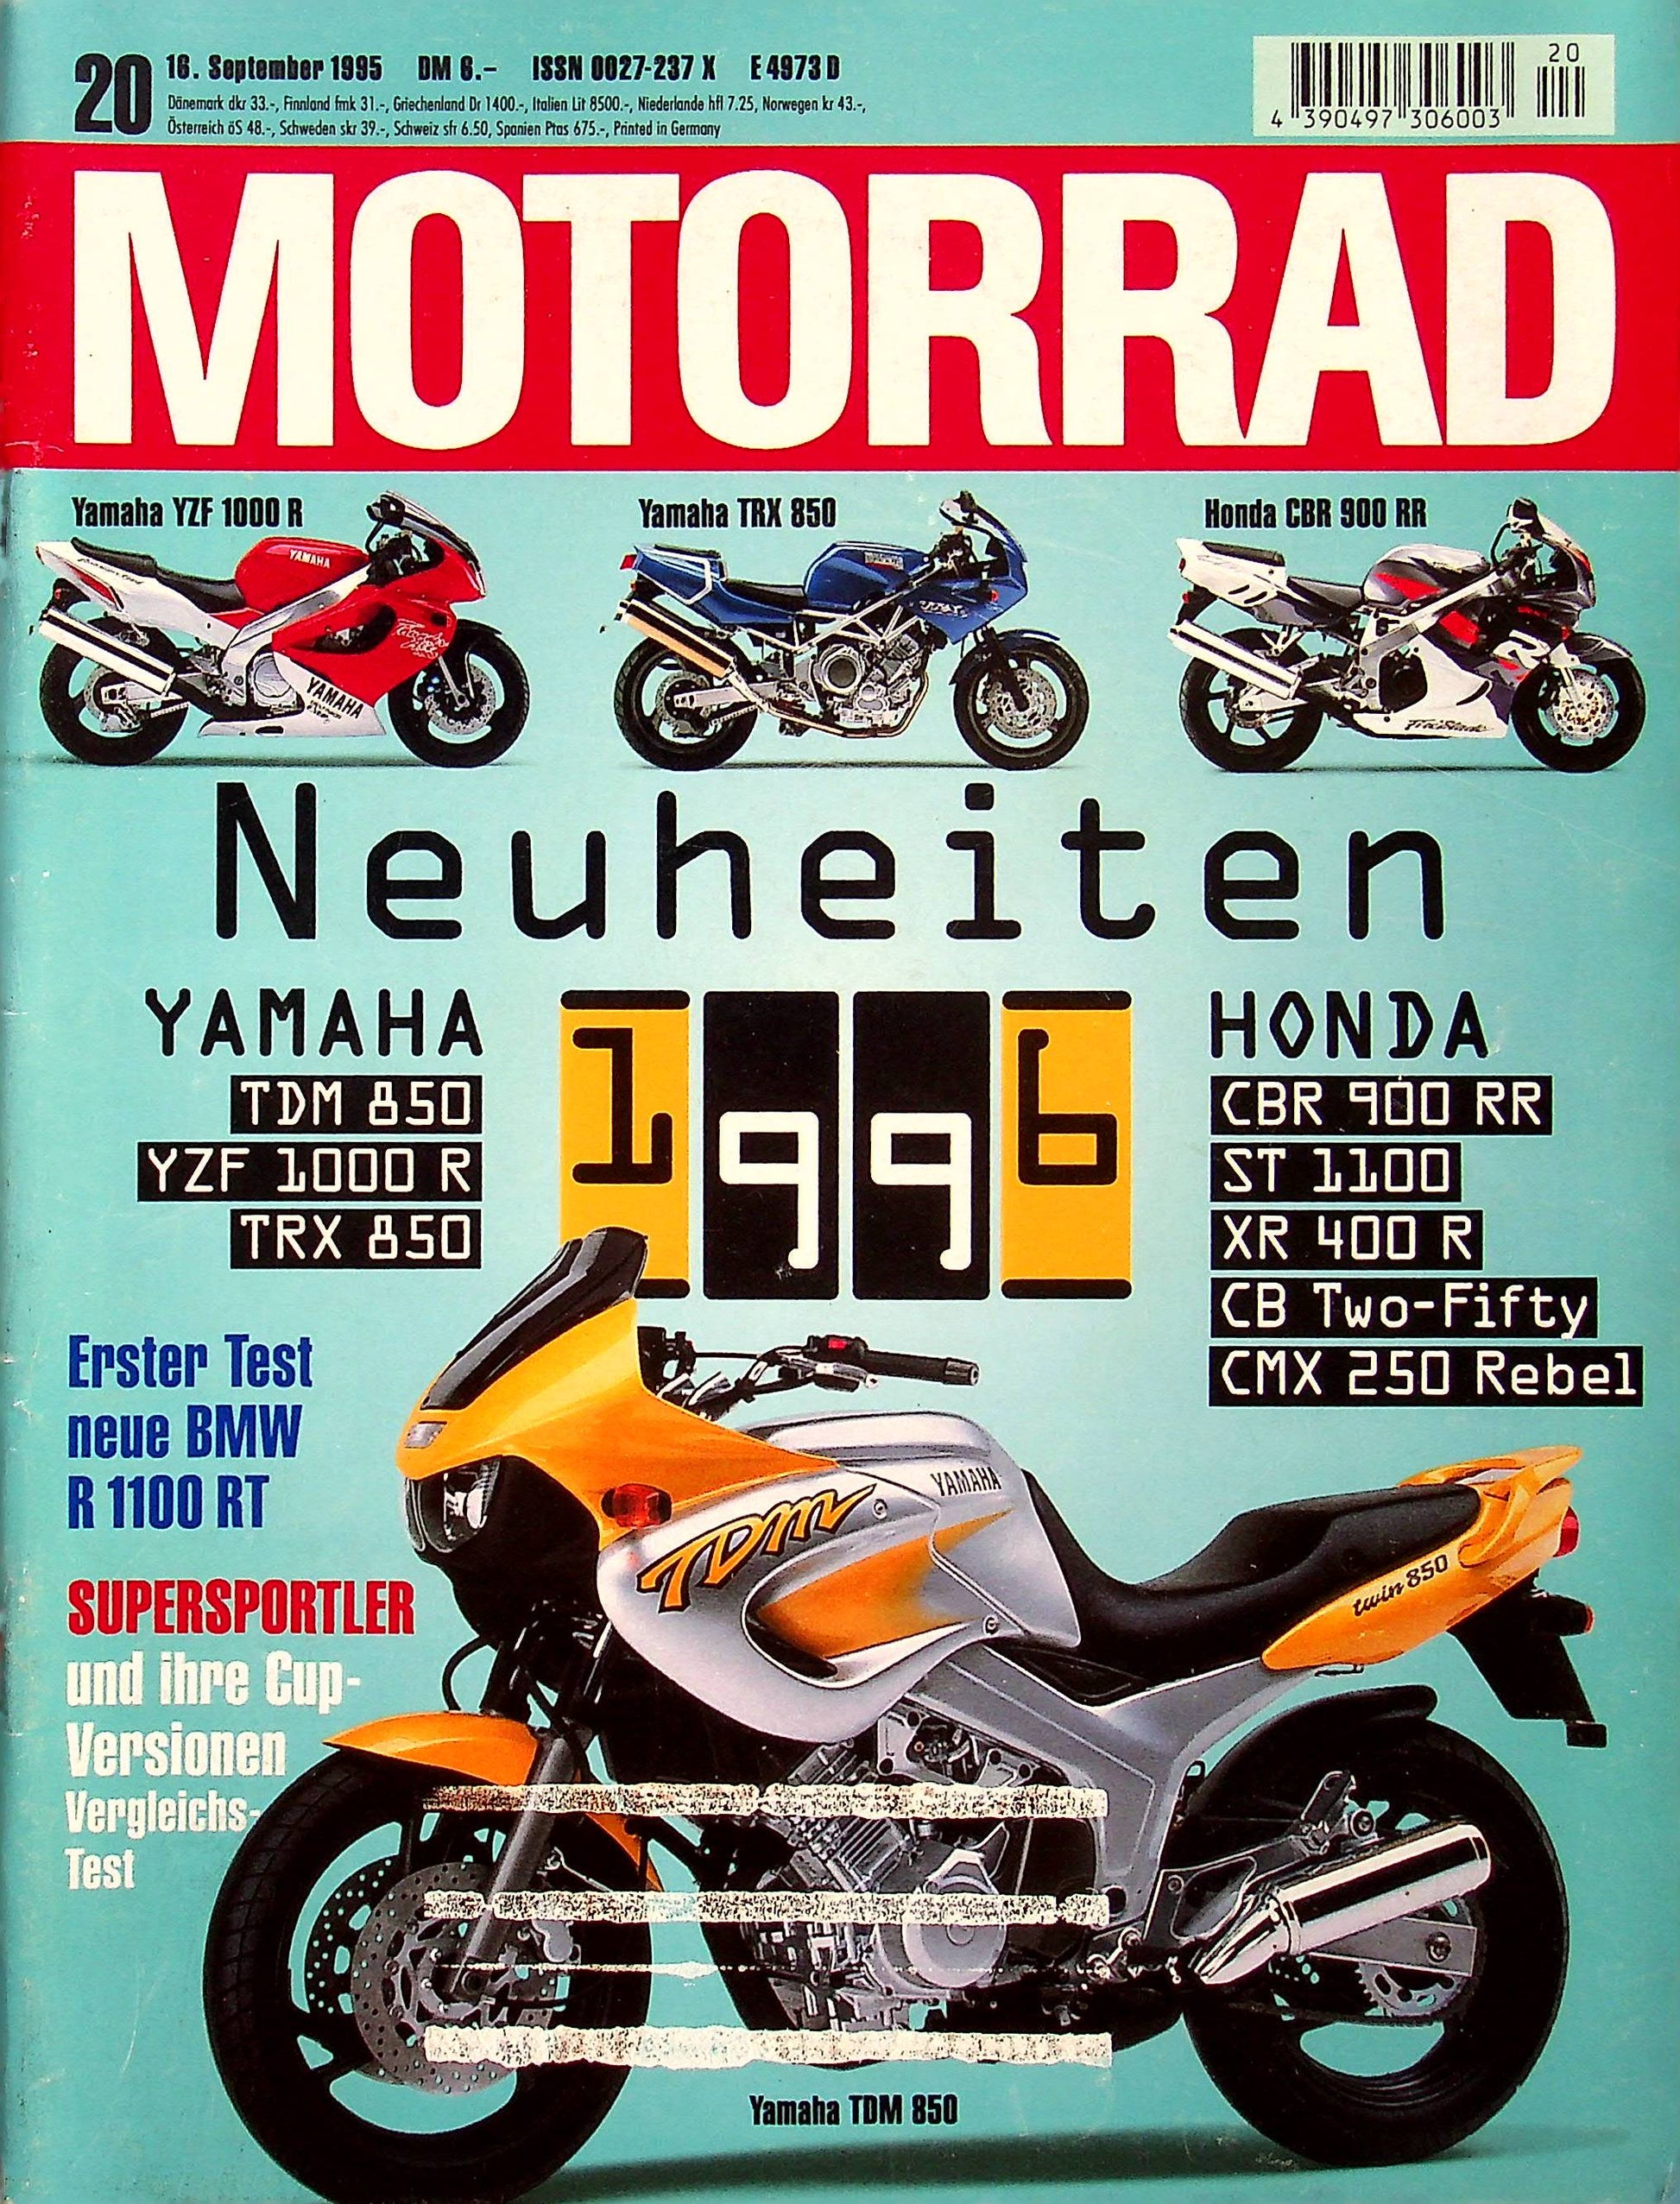 Motorrad 20/1995